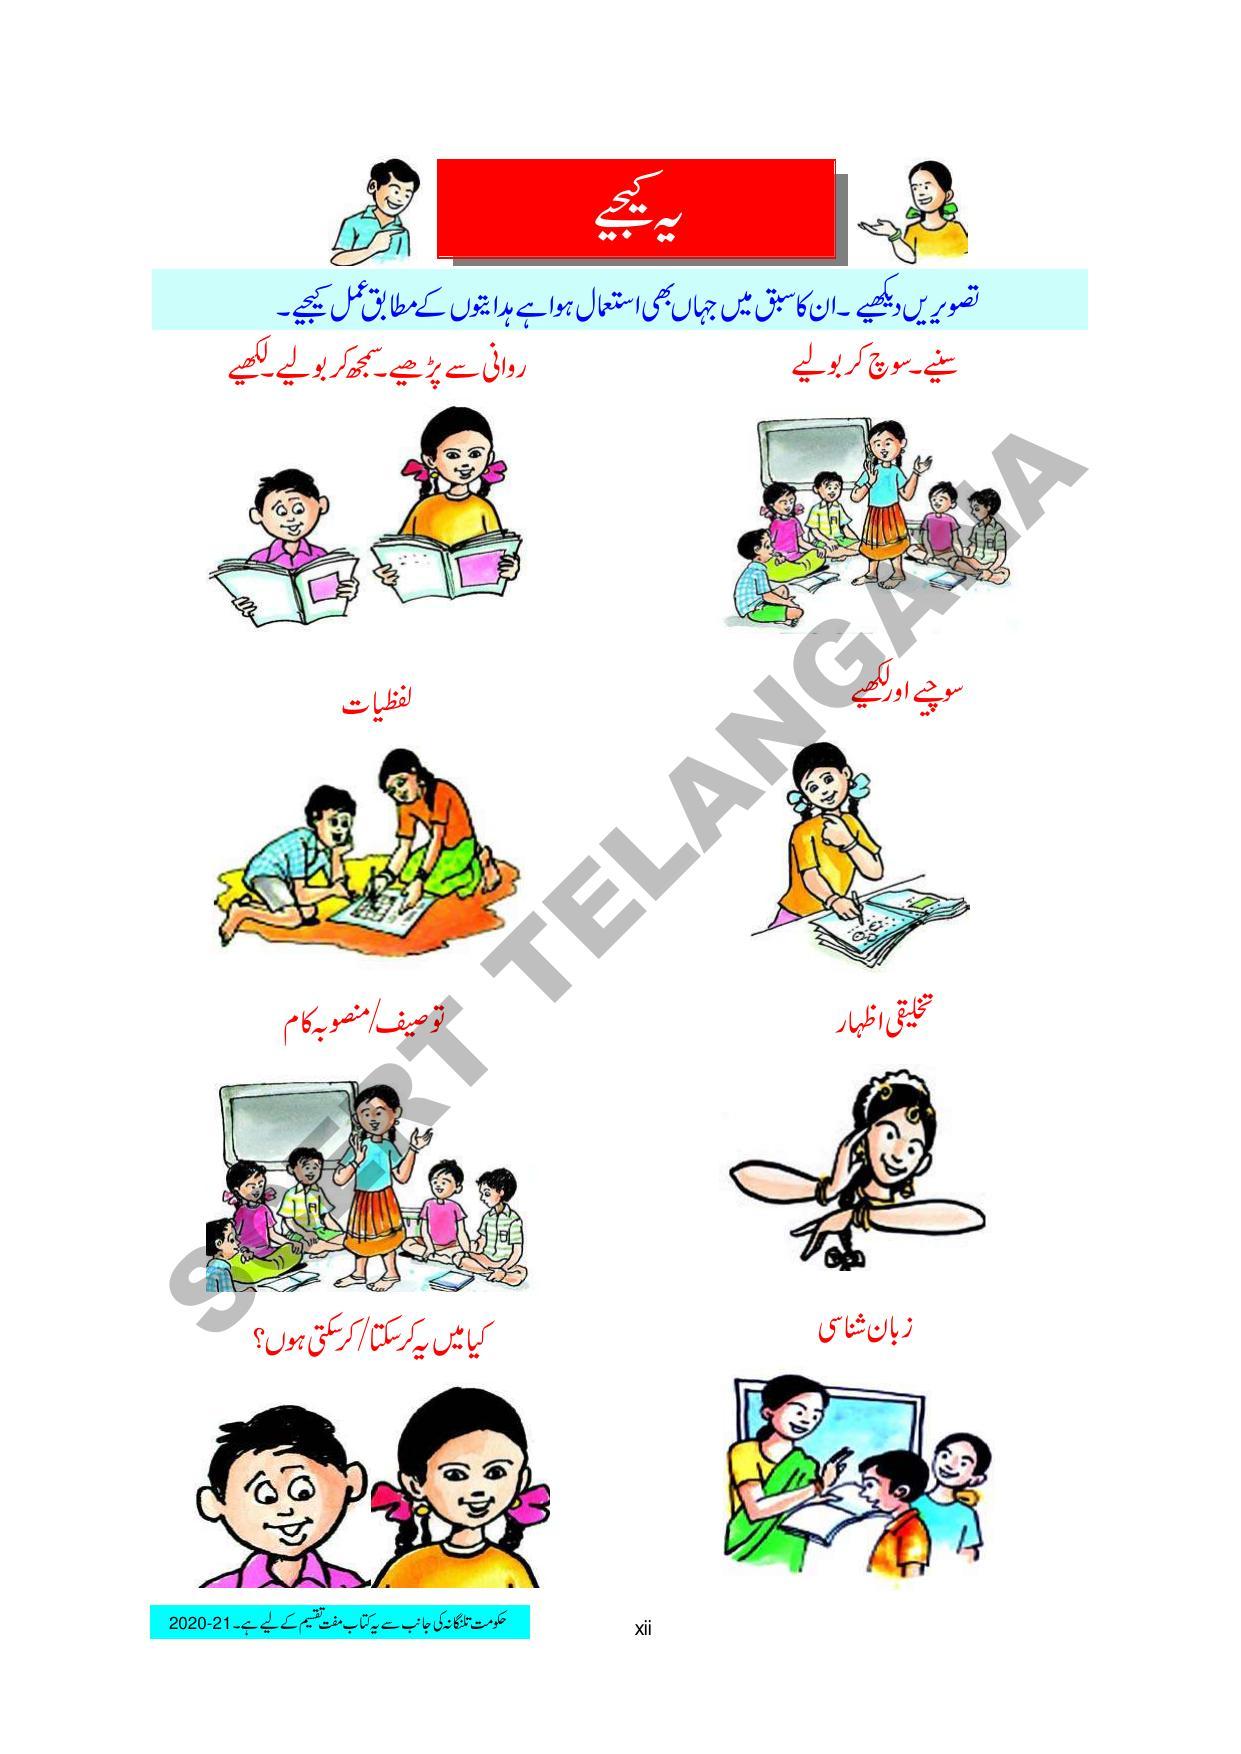 TS SCERT Class 3 First Language(Urdu Medium) Text Book - Page 14